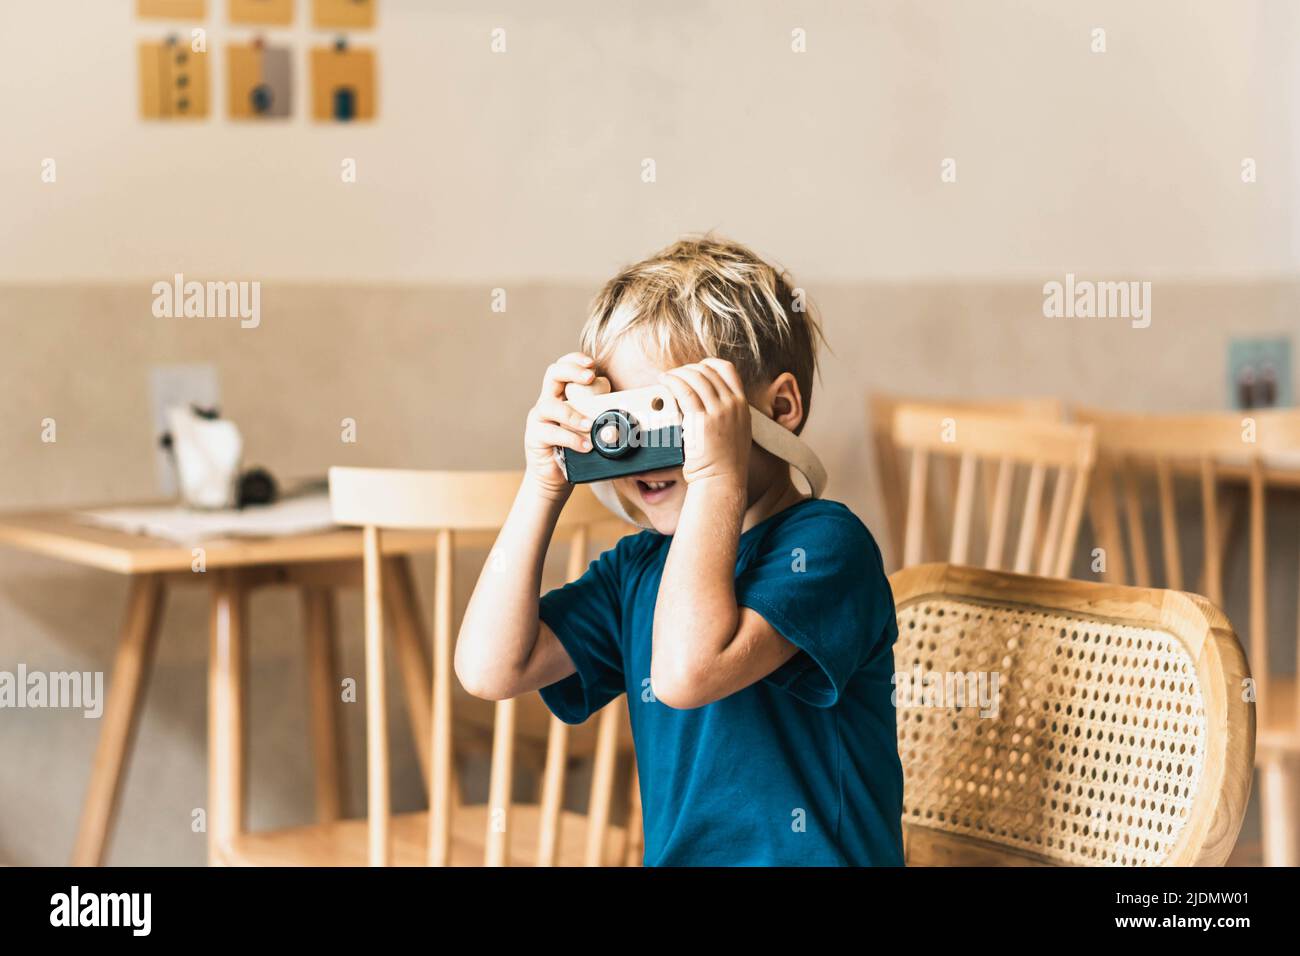 Carino sorriso felice ragazzino giocare a macchina fotografica in legno fatto a mano, tenere il giocattolo in mani. Attività artigianali artistiche. Abilità di sviluppo dei bambini di prescolare Foto Stock